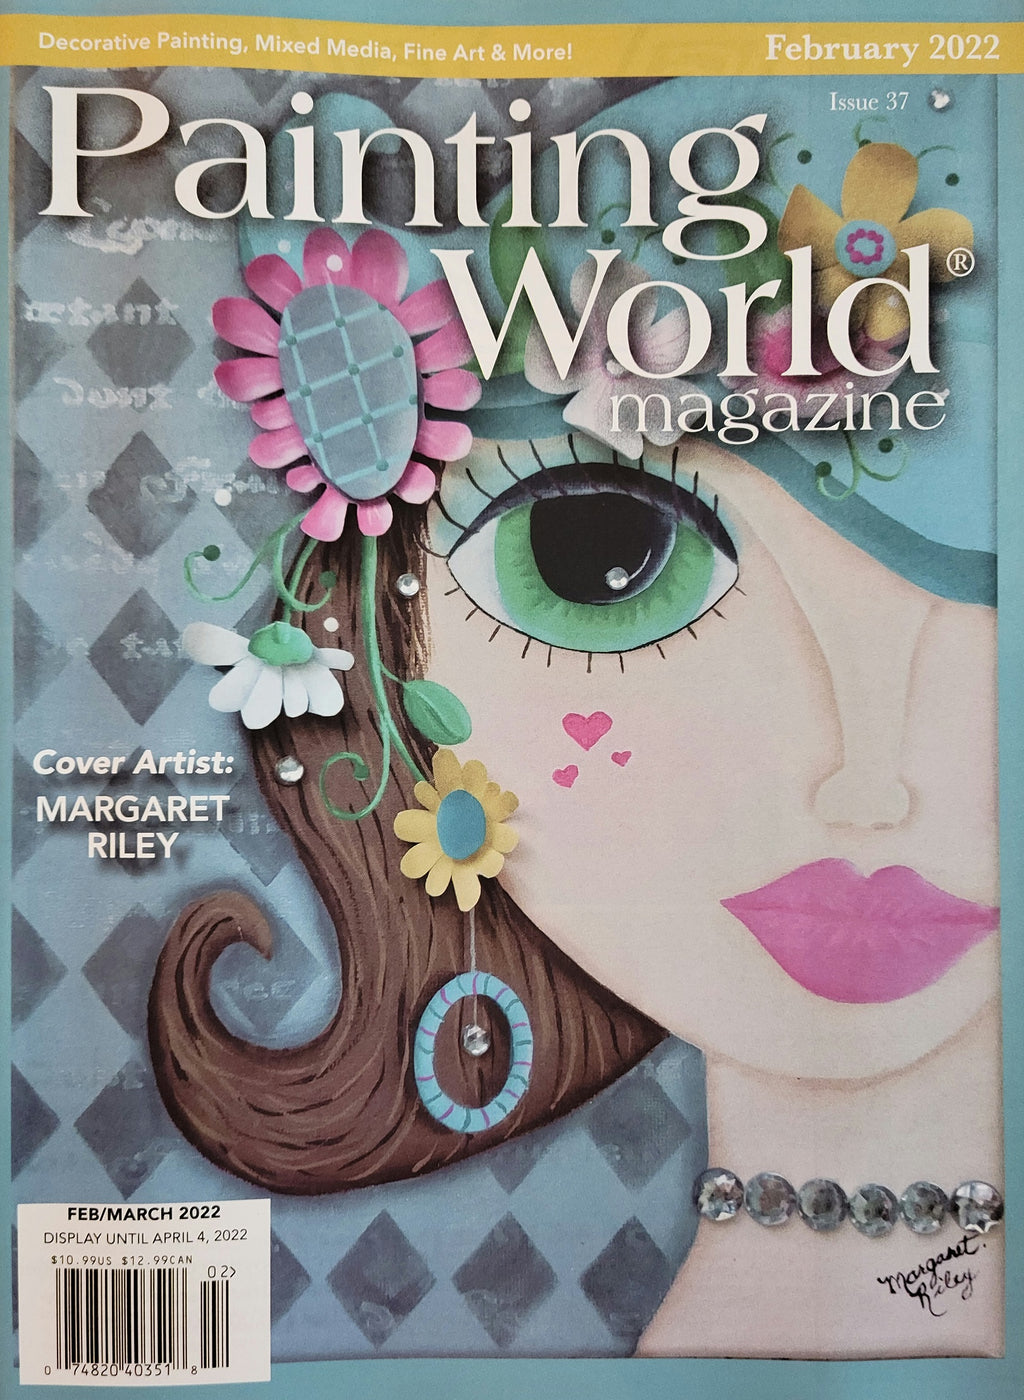 Painting World Magazine, Issue 37, February 2022